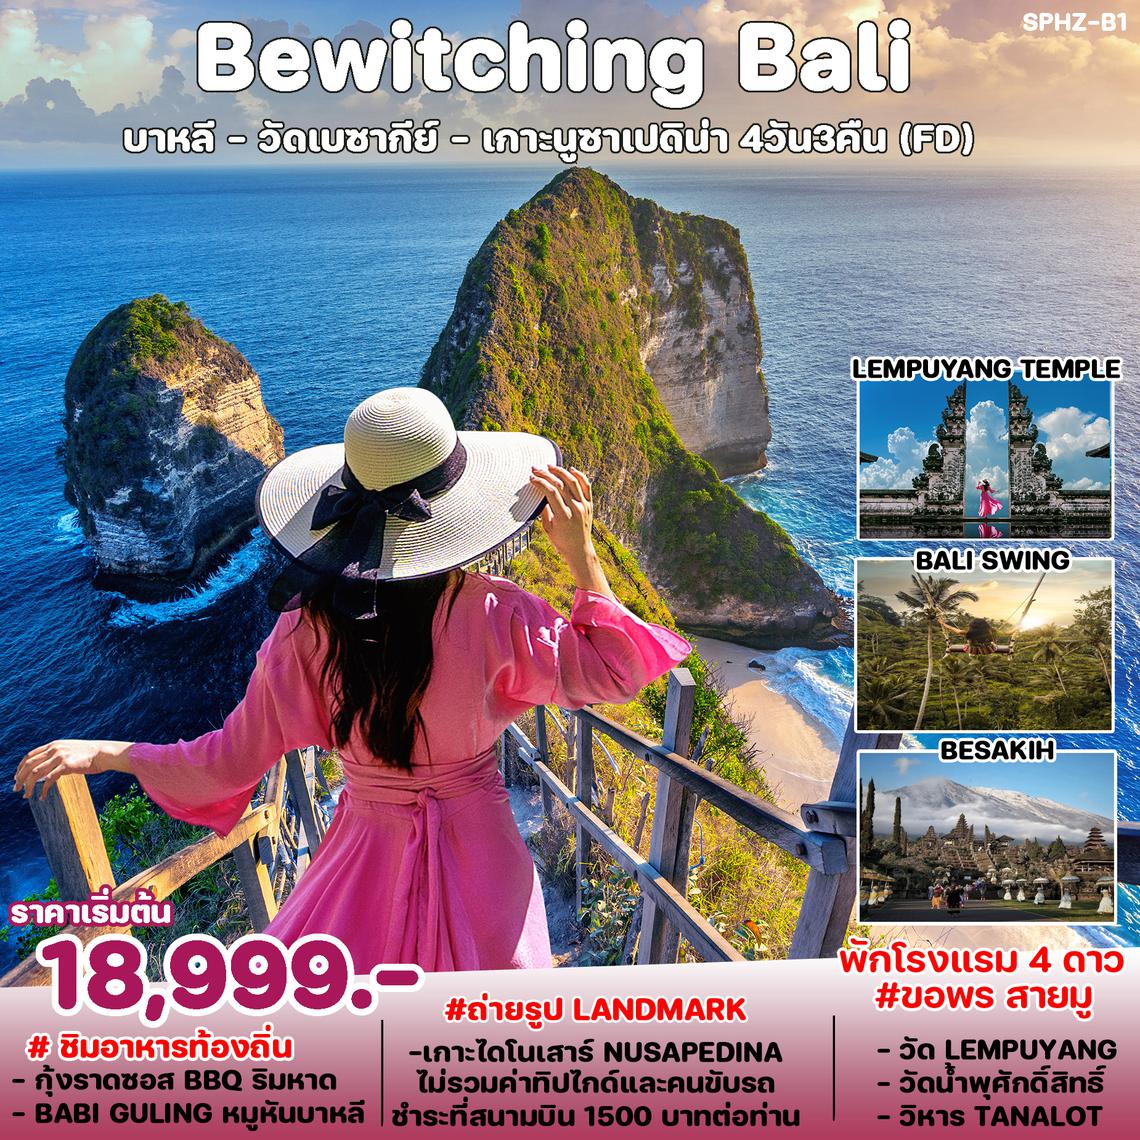 ทัวร์อินโดนีเซีย บาหลี Bewitching Bali 4D 3N (FD)